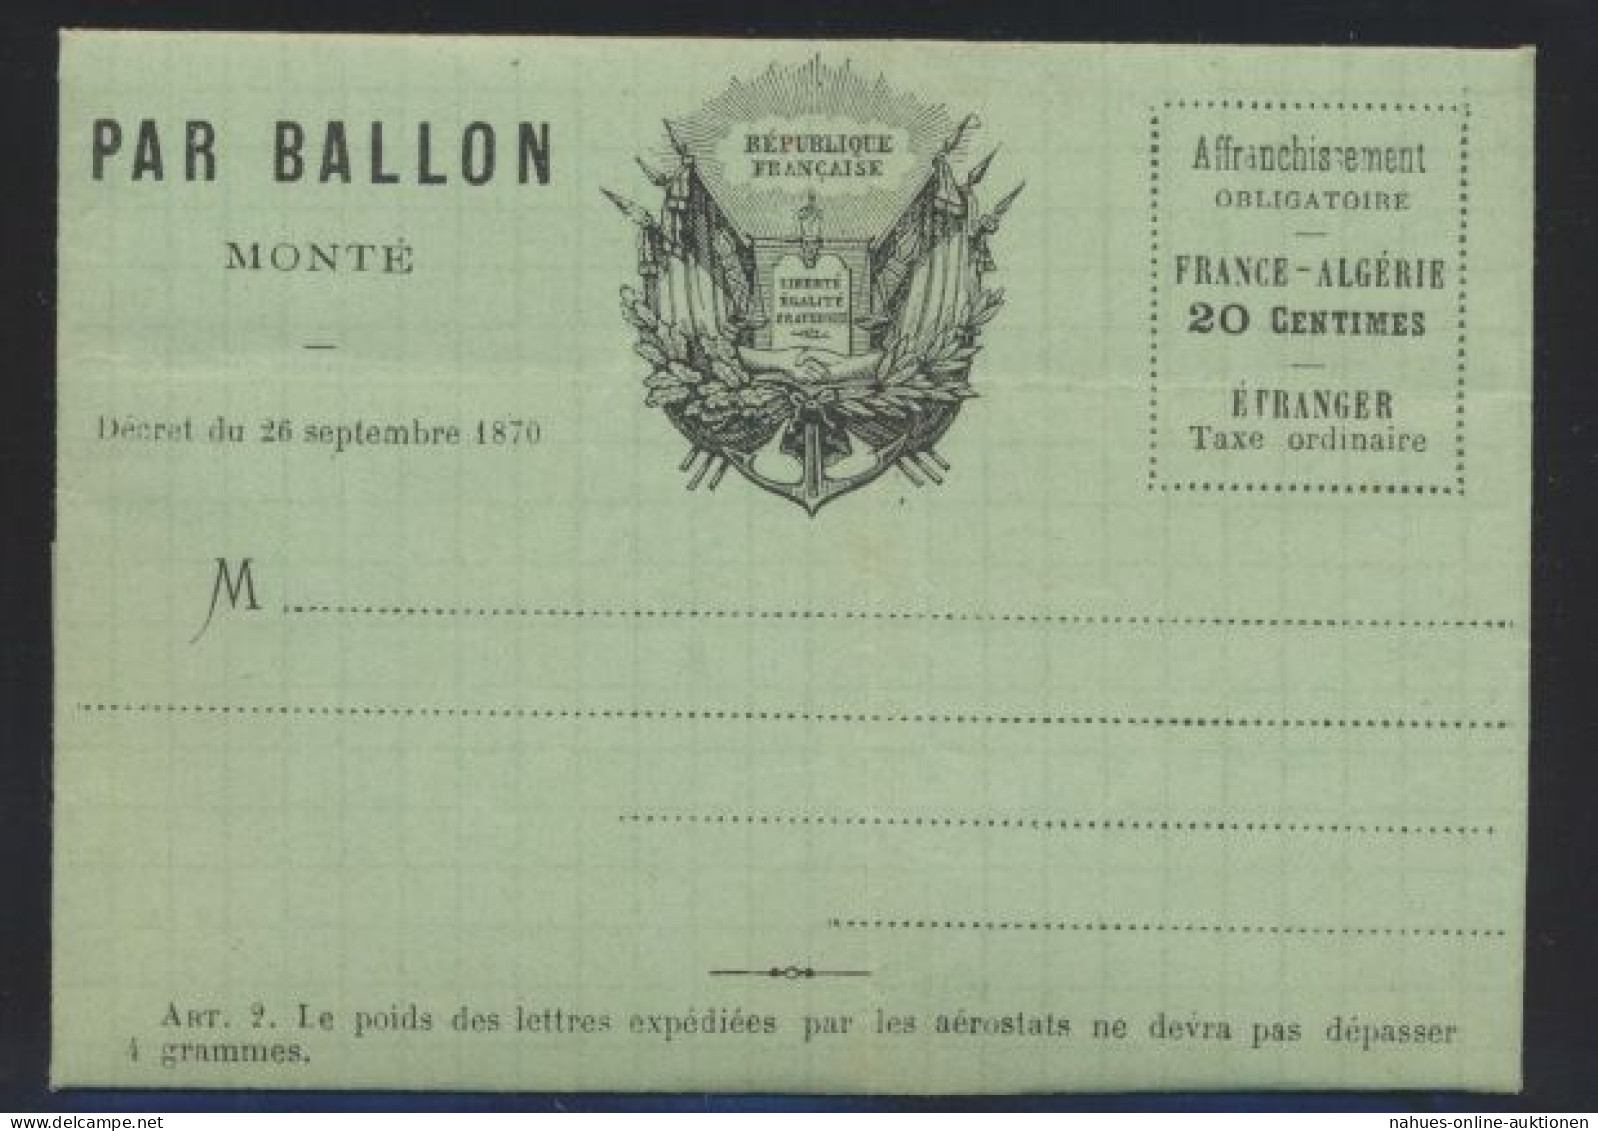 Flugpost Air Mail Ballonpost Ballon Monte Frankreich France 20 C. Faltbrief Von - Brieven En Documenten